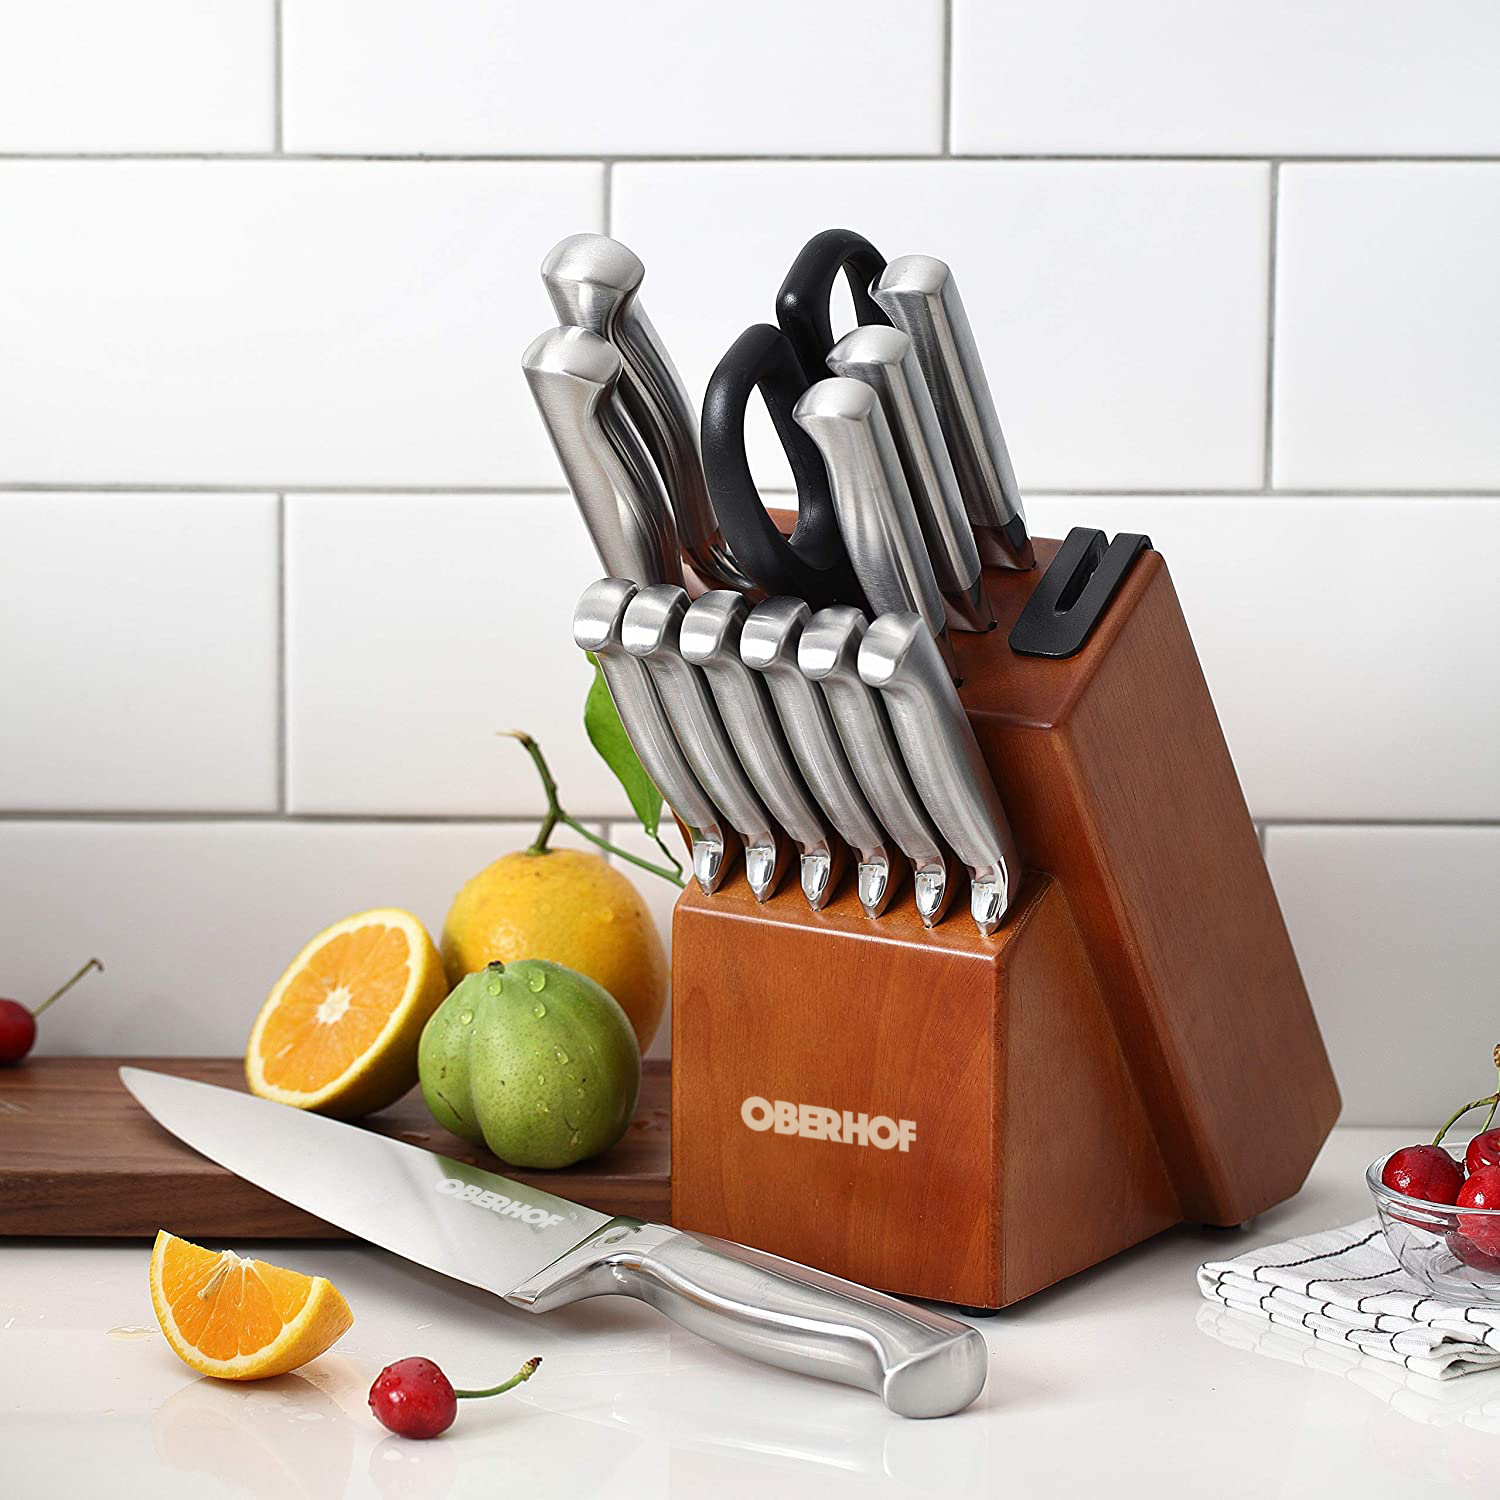 Oberhof Schneidkante S-17 - состав набора: универсальный нож, нож сантоку, нож для овощей, нож для стейка, зубчатый нож, поварской нож